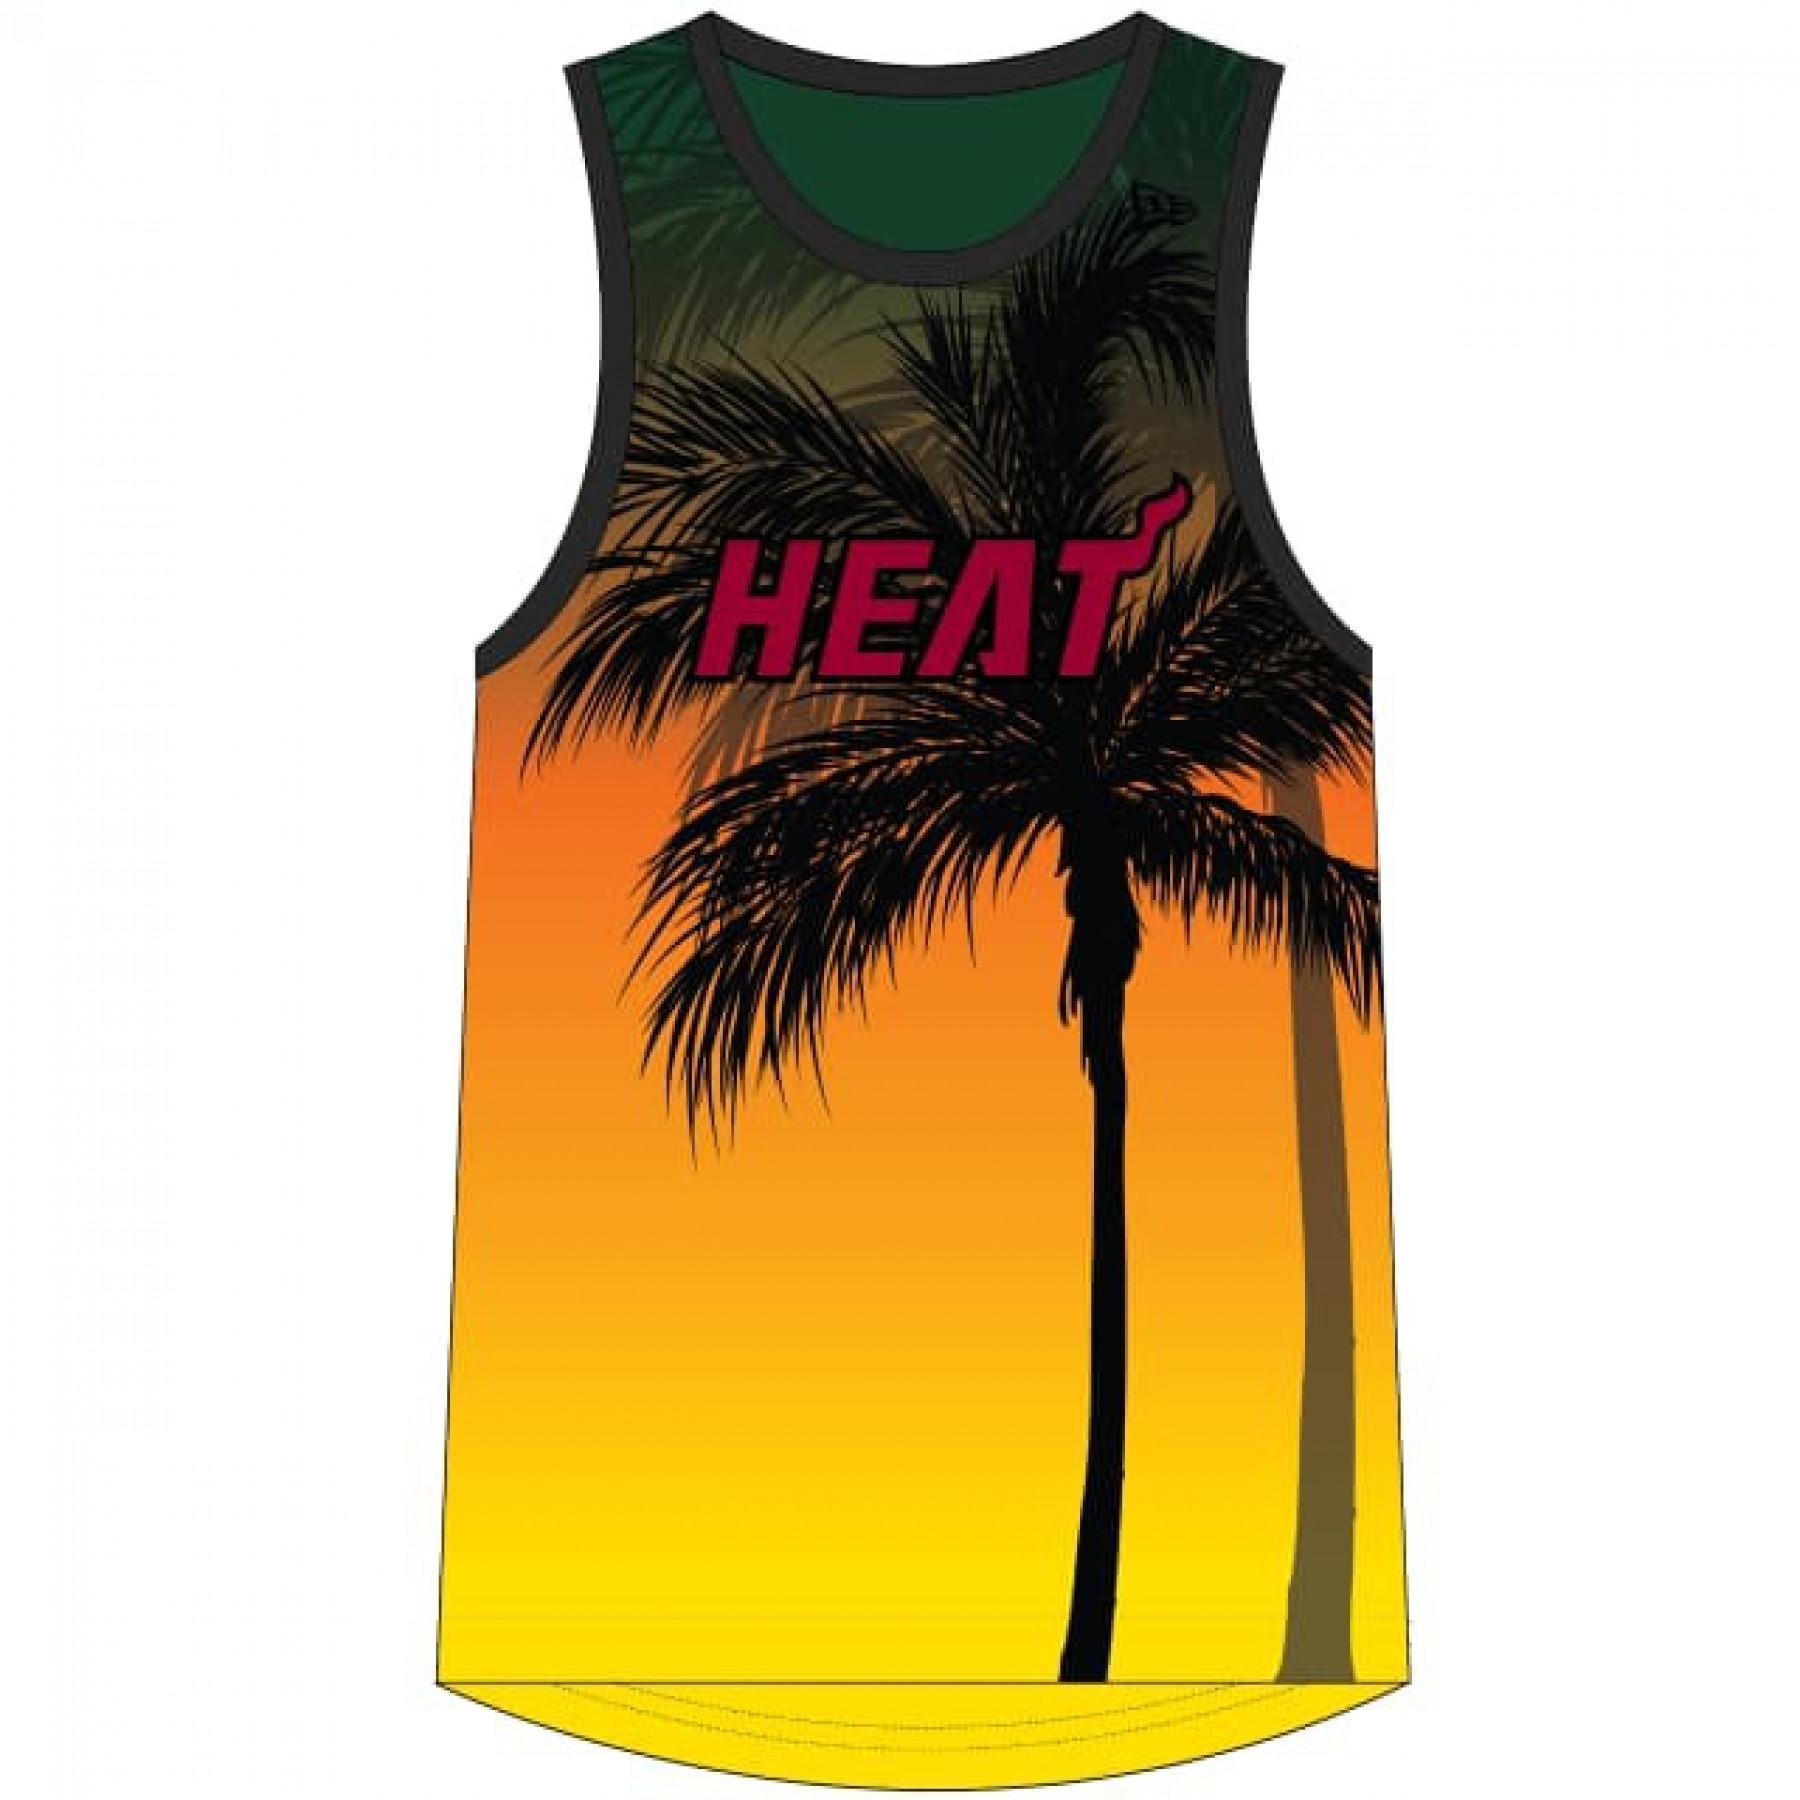 Tank top New Era NBA Miami Heat Aop summer city